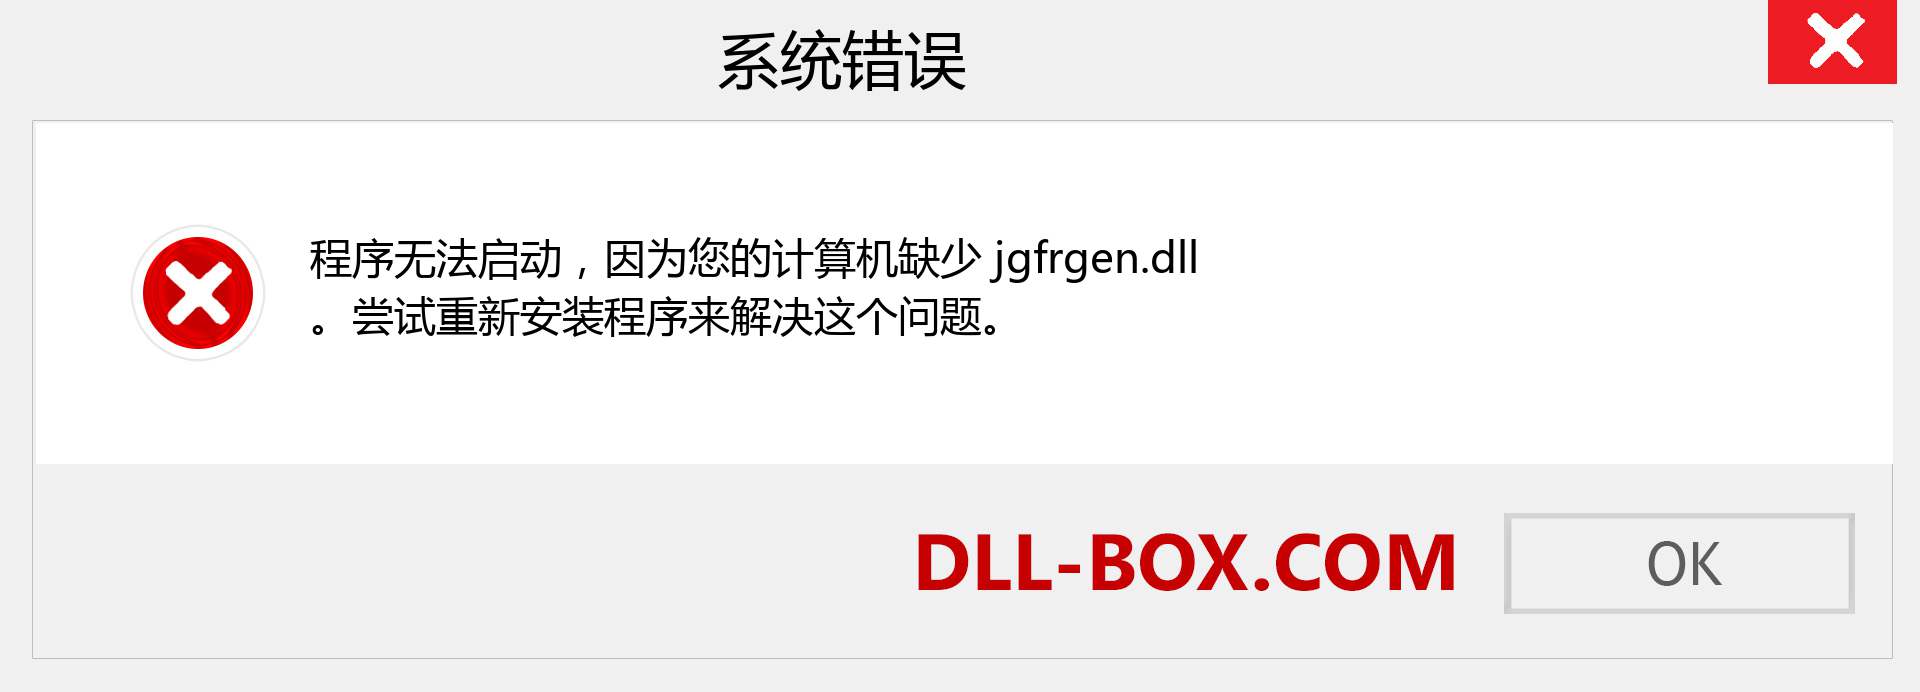 jgfrgen.dll 文件丢失？。 适用于 Windows 7、8、10 的下载 - 修复 Windows、照片、图像上的 jgfrgen dll 丢失错误